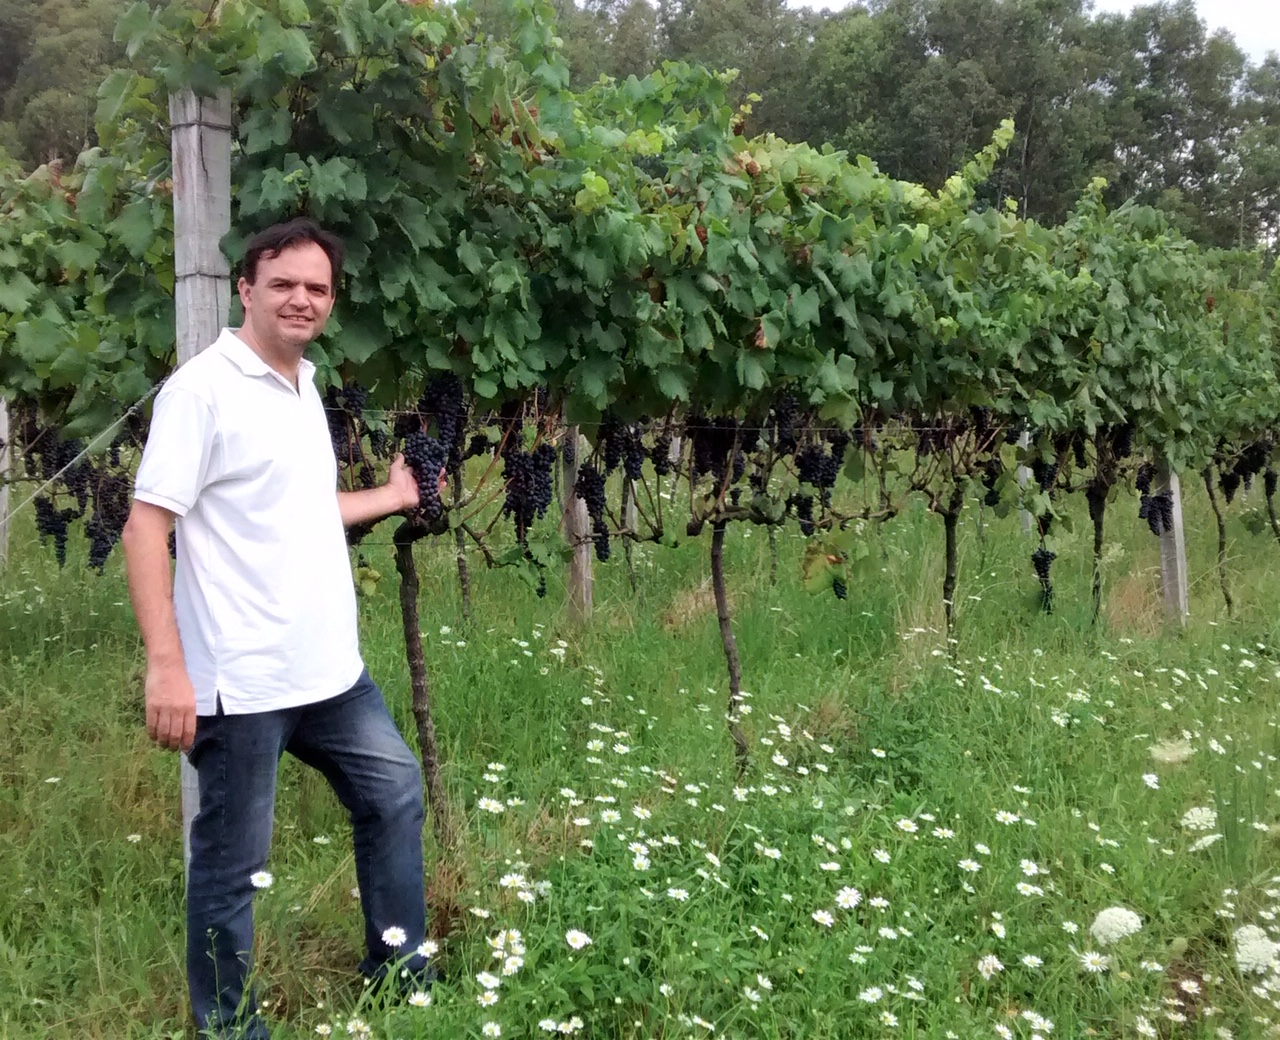 A ideia de ter um vinho natural e de fermentar uma uva branca, como a Peverella, junto com as cascas, ganhou força em 2007.